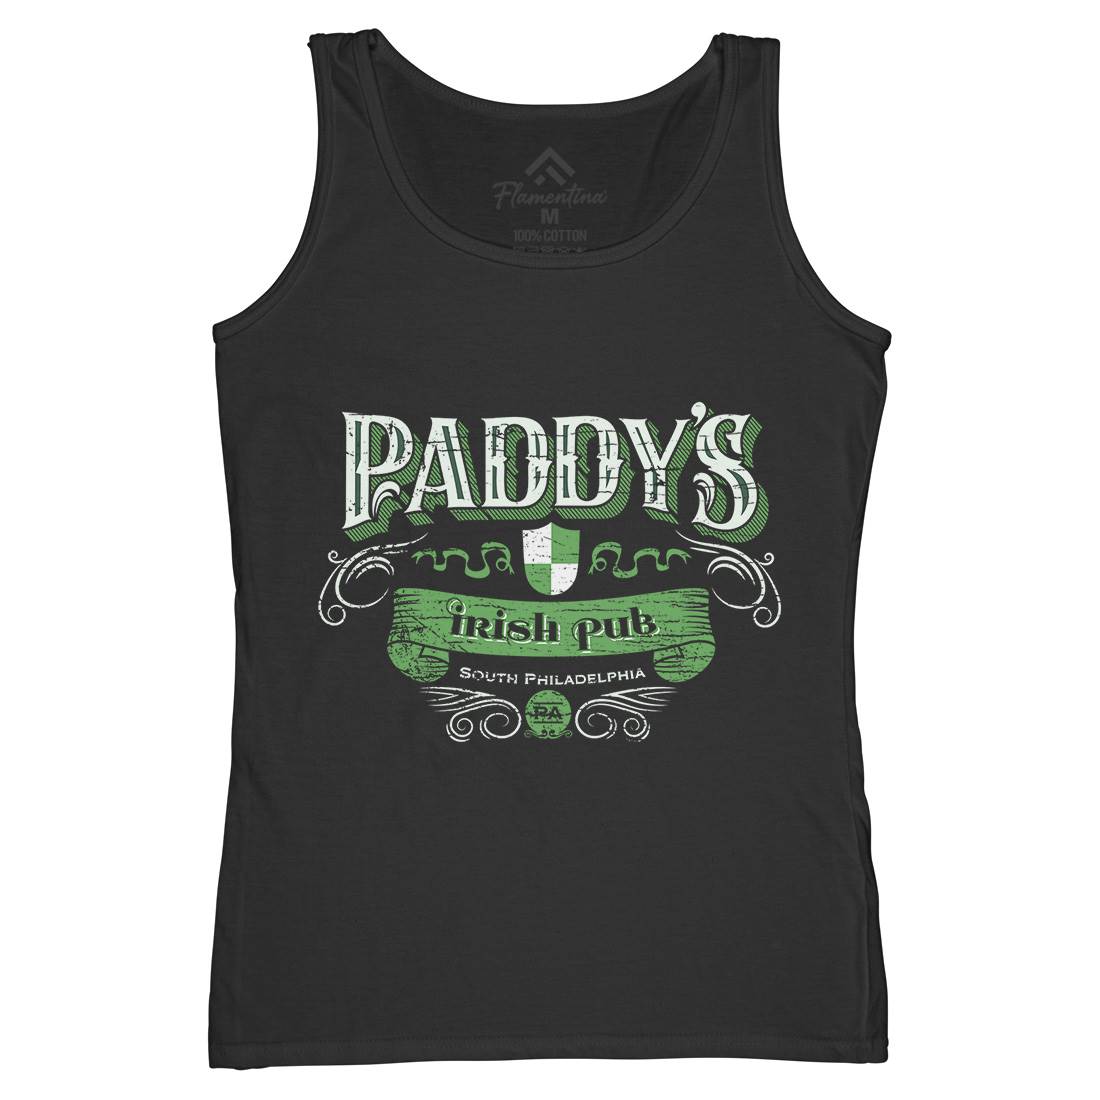 Paddys Irish Pub Womens Organic Tank Top Vest Drinks D246